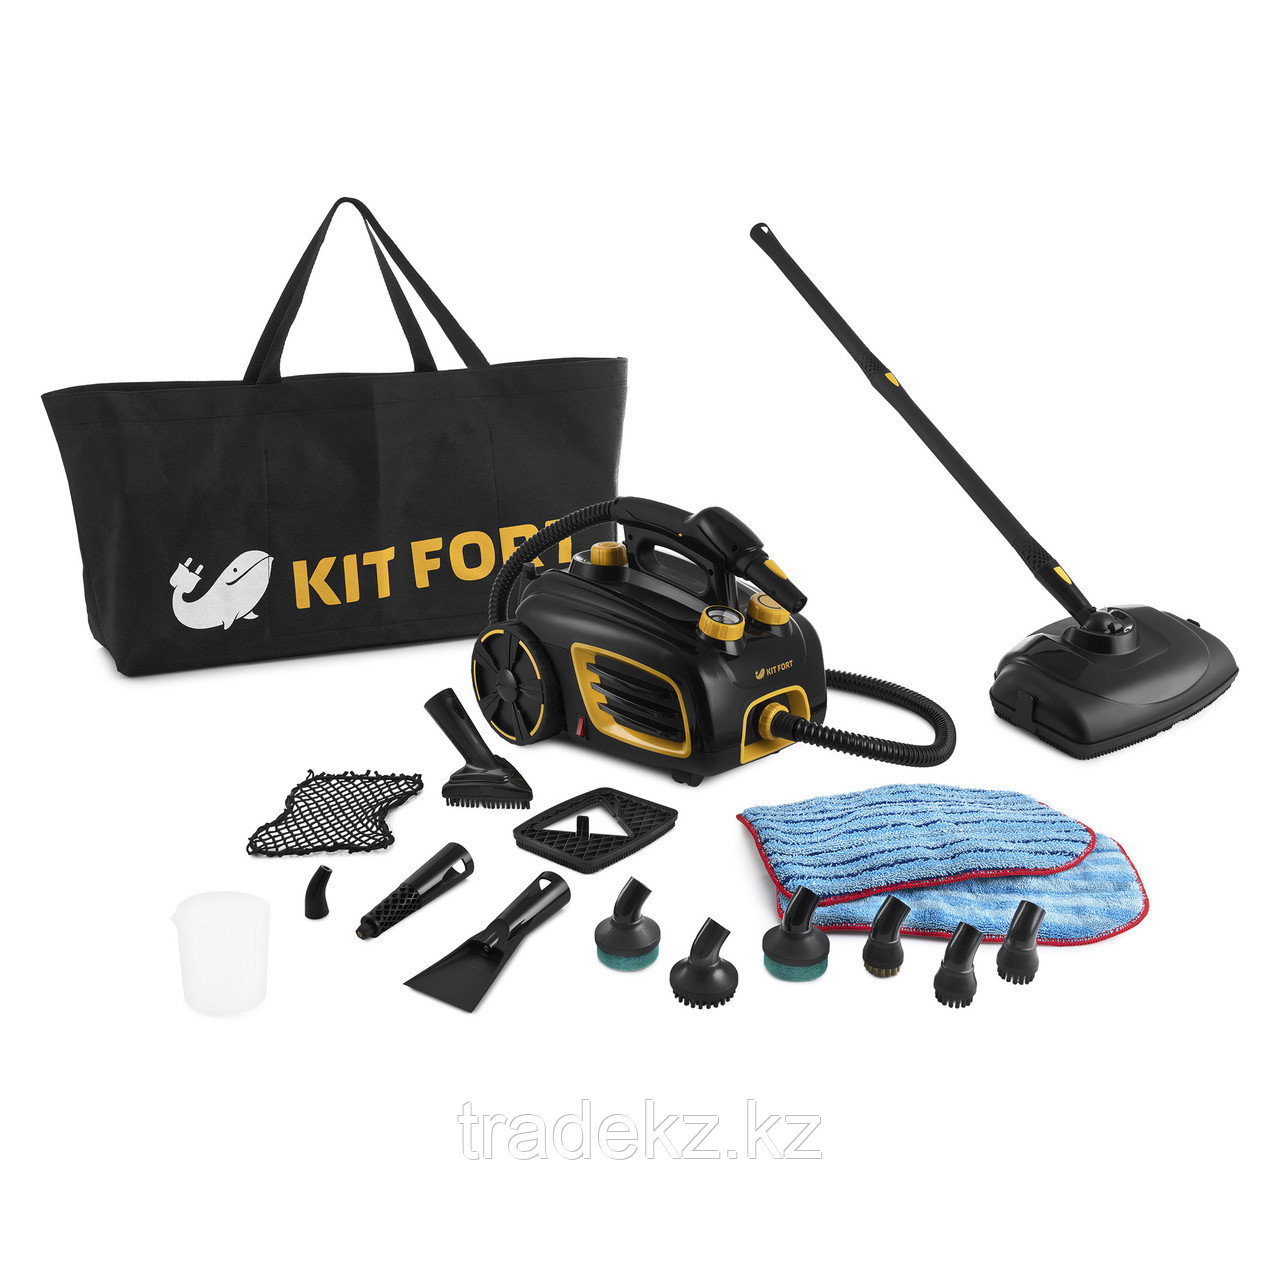 Пароочиститель Kitfort KT-932